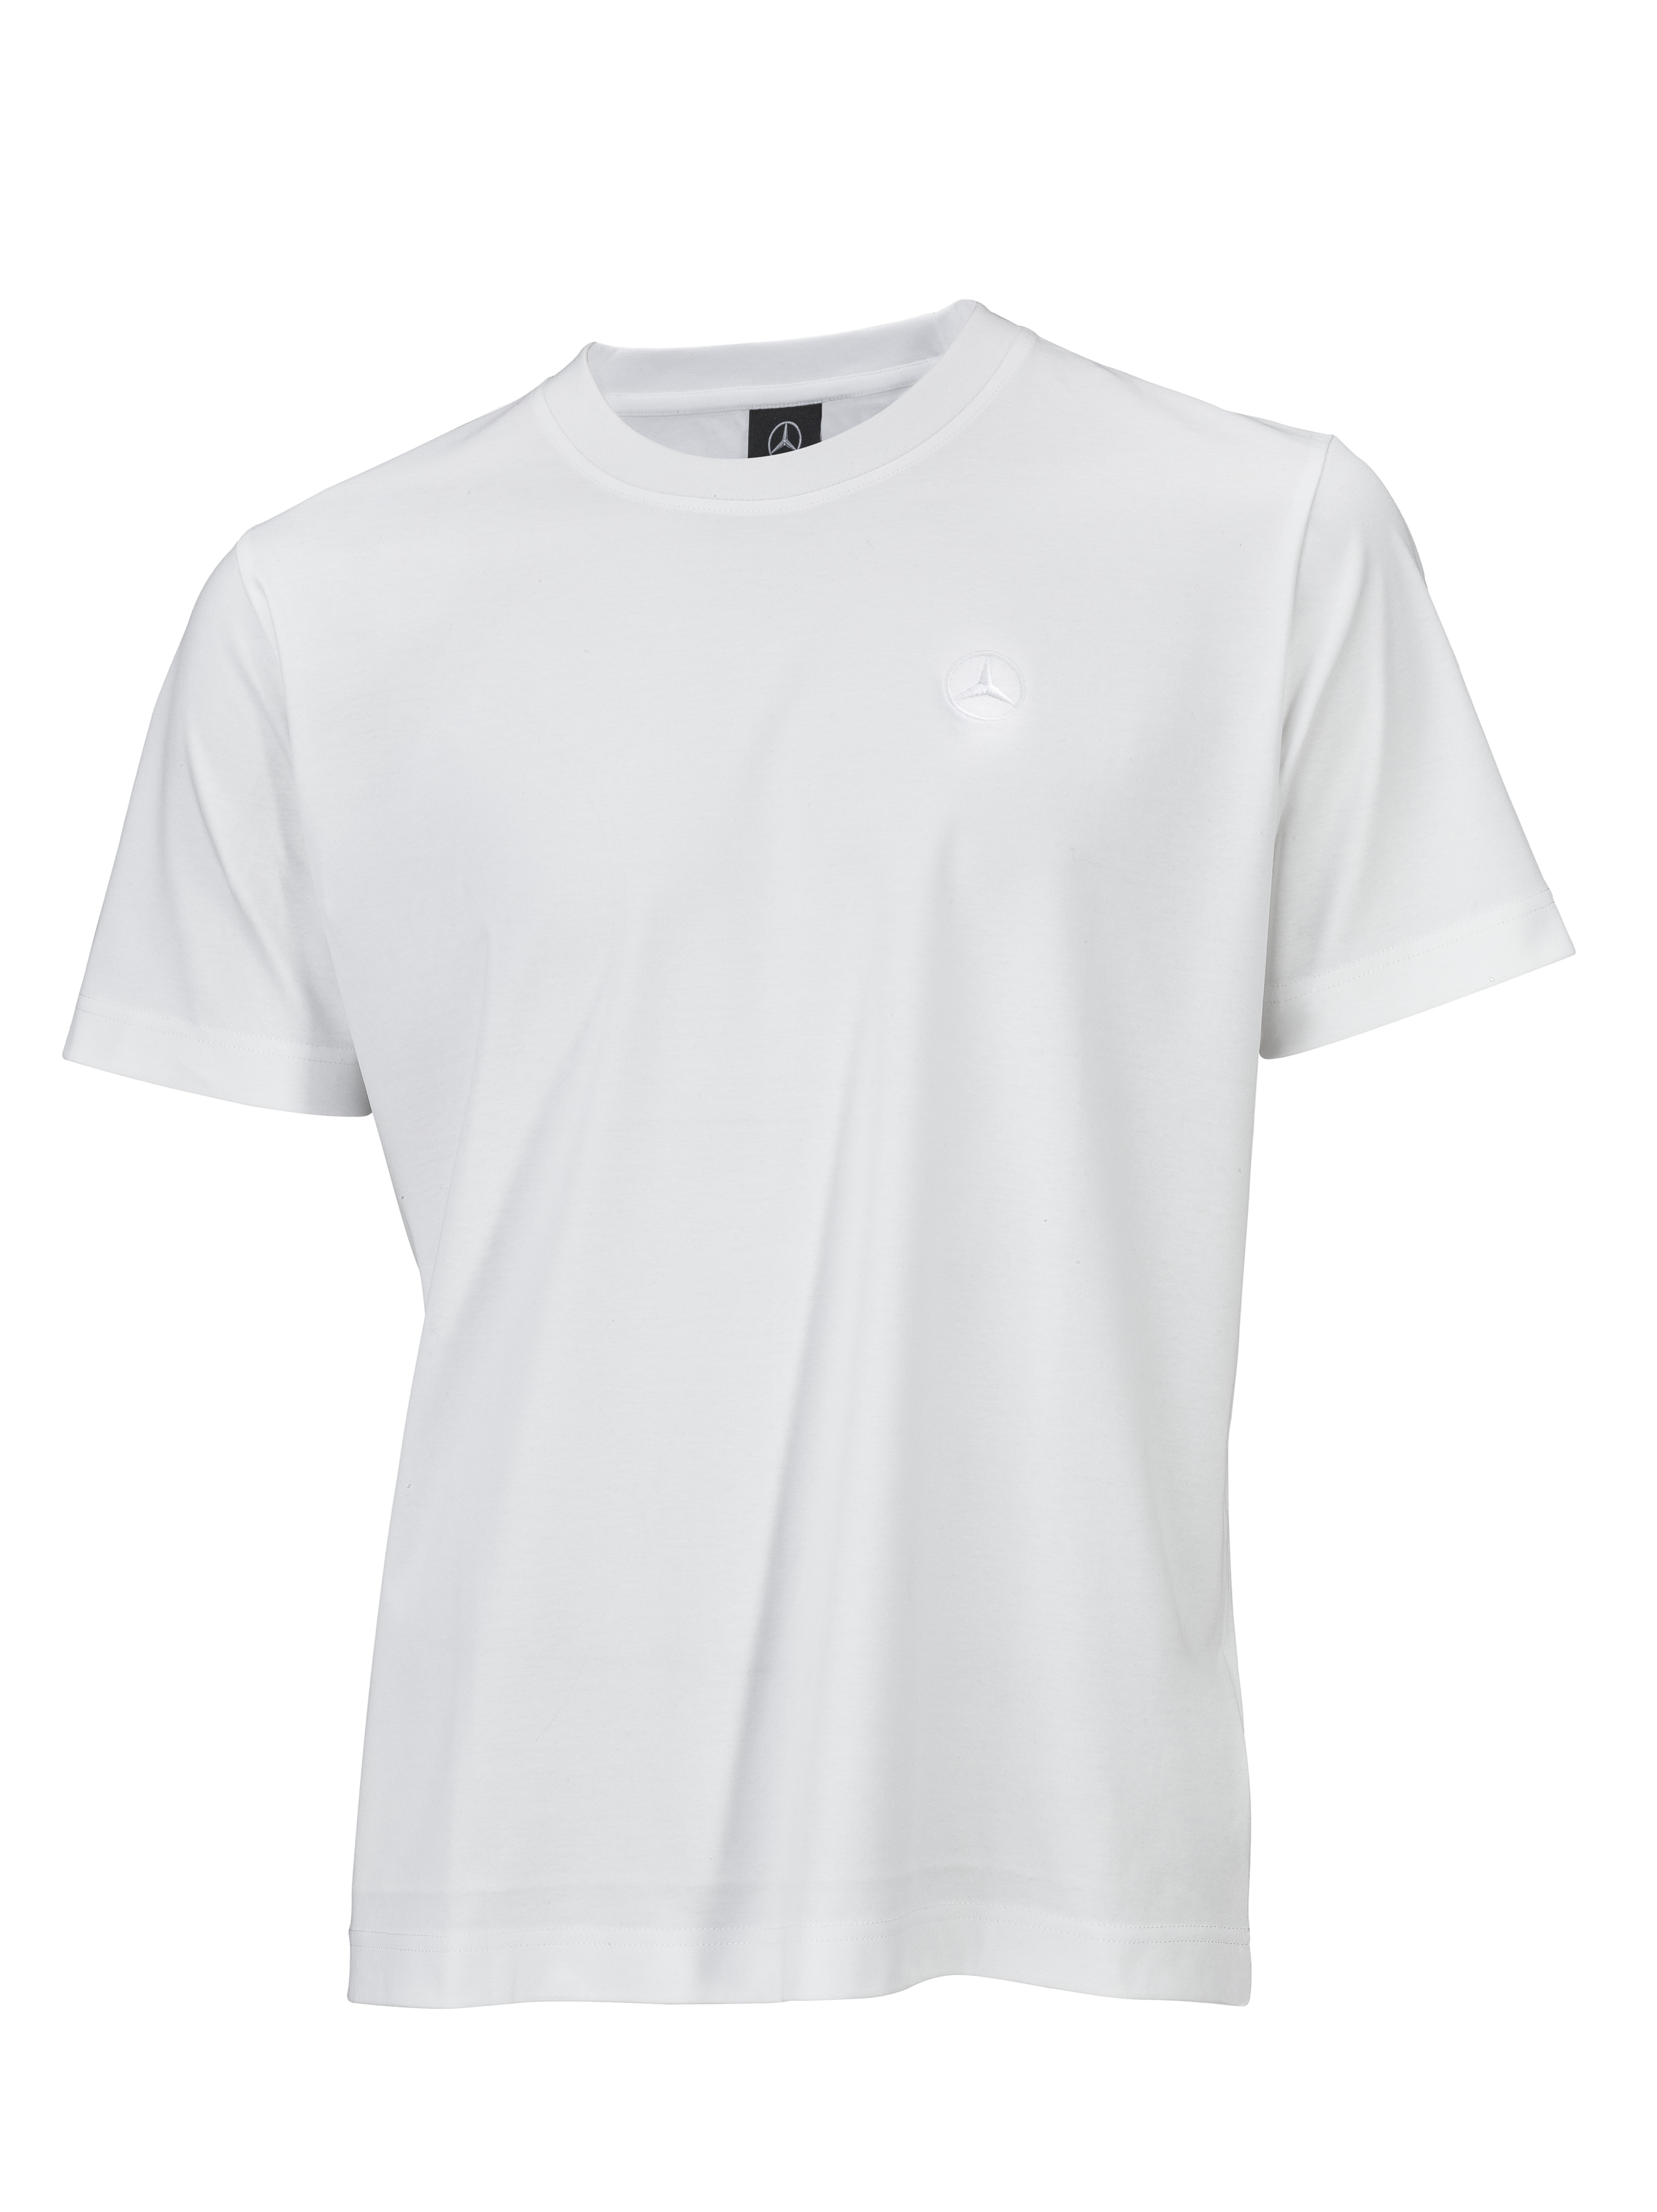 T-Shirt Unisex - weiß, XS